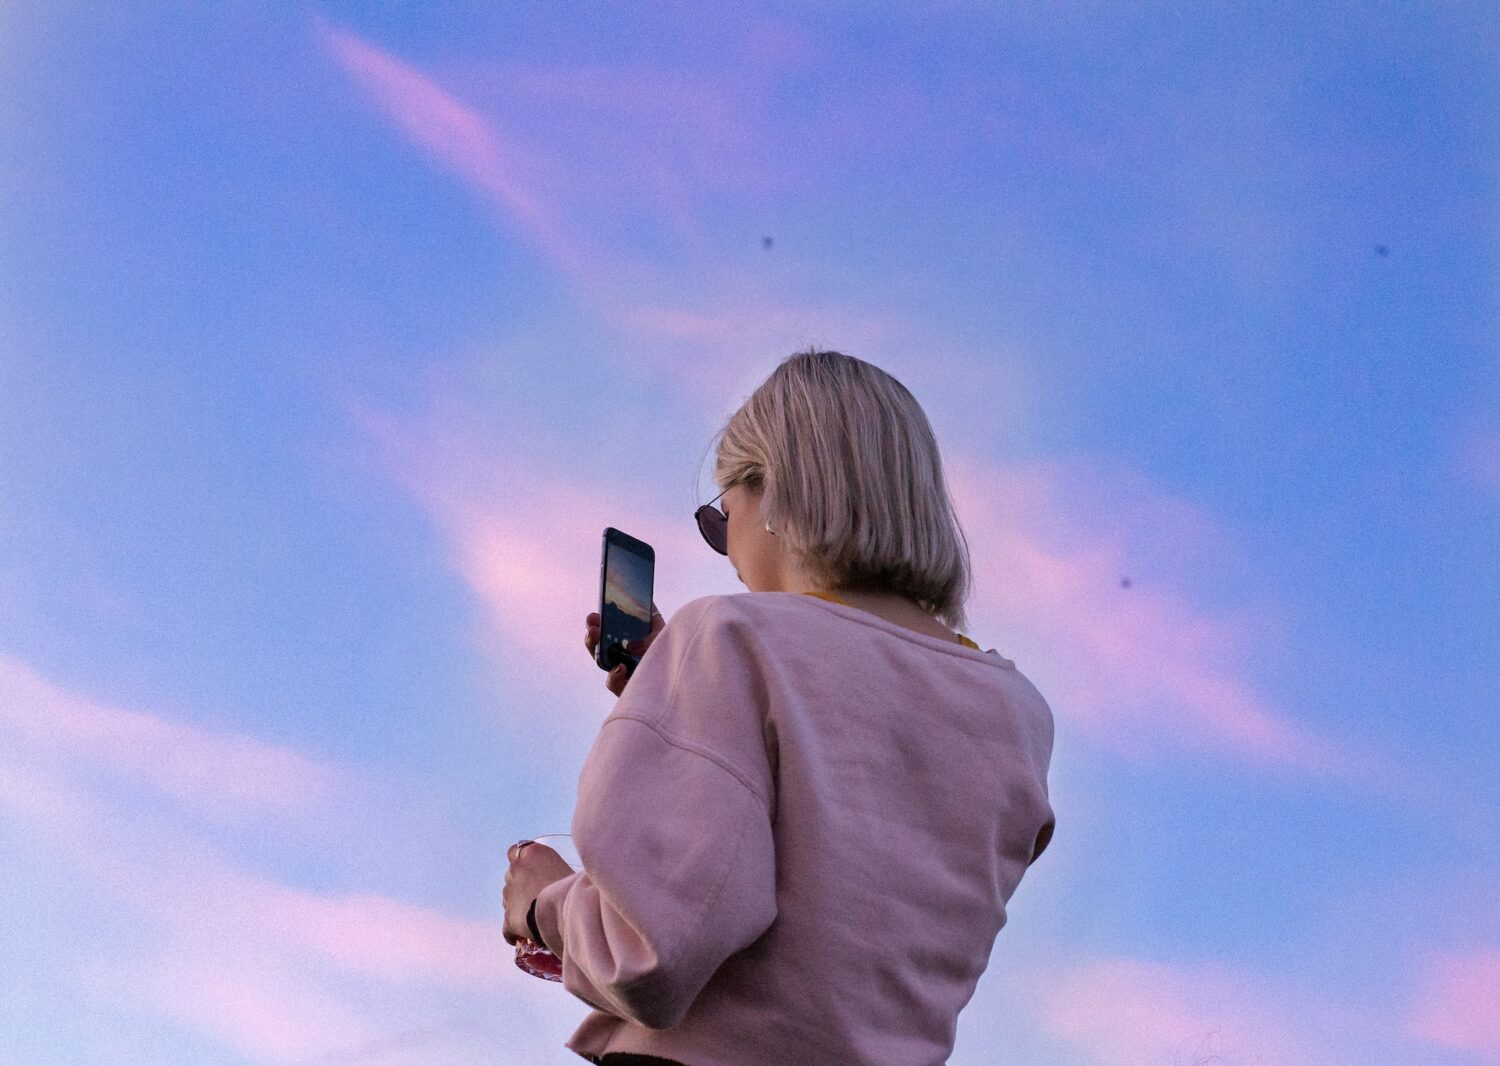 Mulher loira usando uma blusa de moletom cor de rosa enquanto segura o celular para tirar foto do céu azul e rosa. - Foto: Marie-Michèle Bouchard via Unsplash